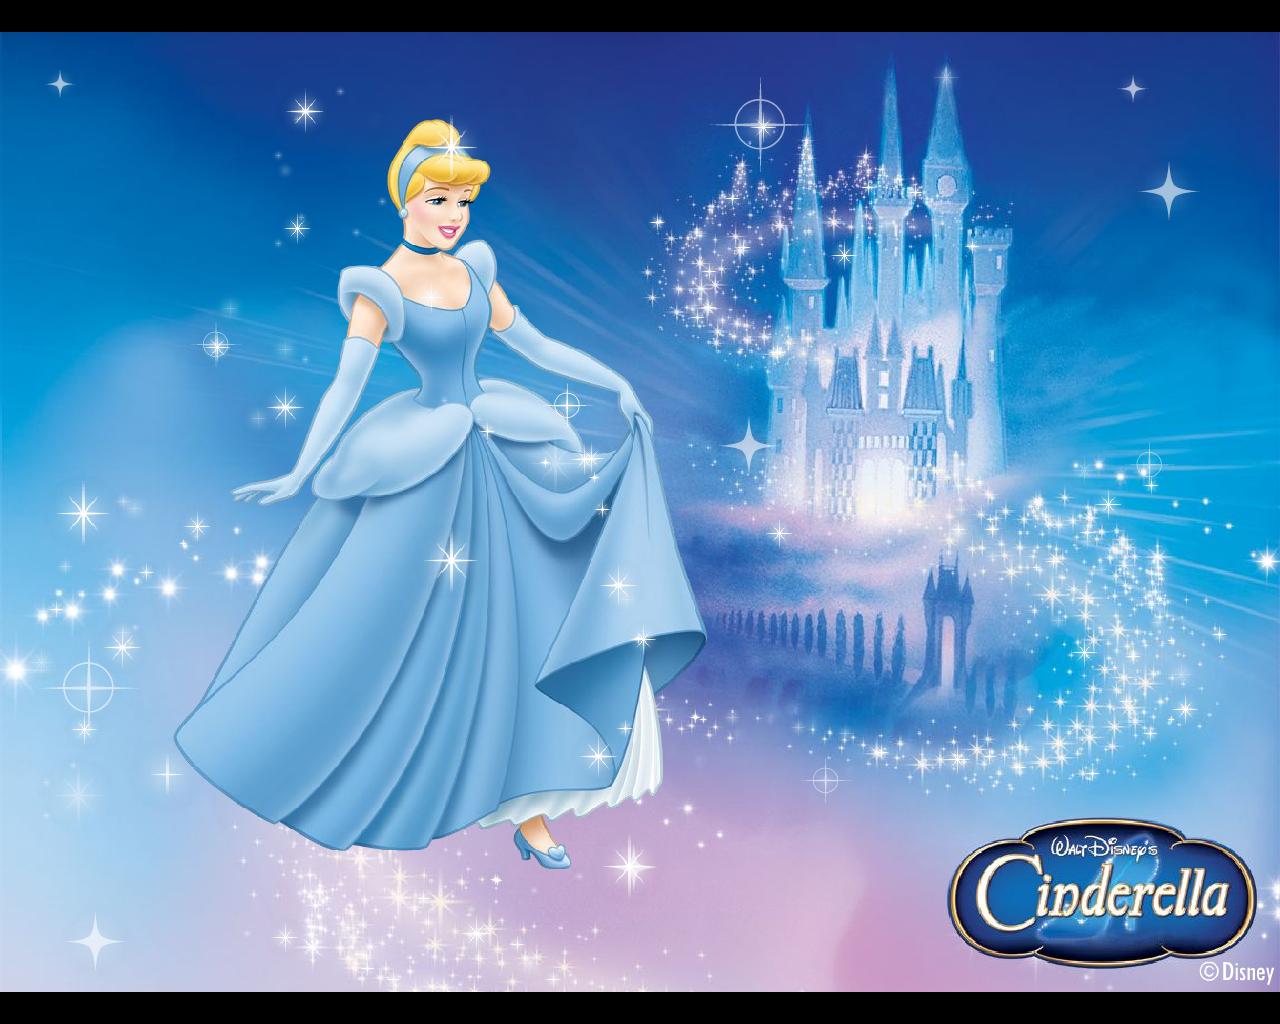 Disney Princess Cinderella Wallpaper Hd - HD Wallpaper 